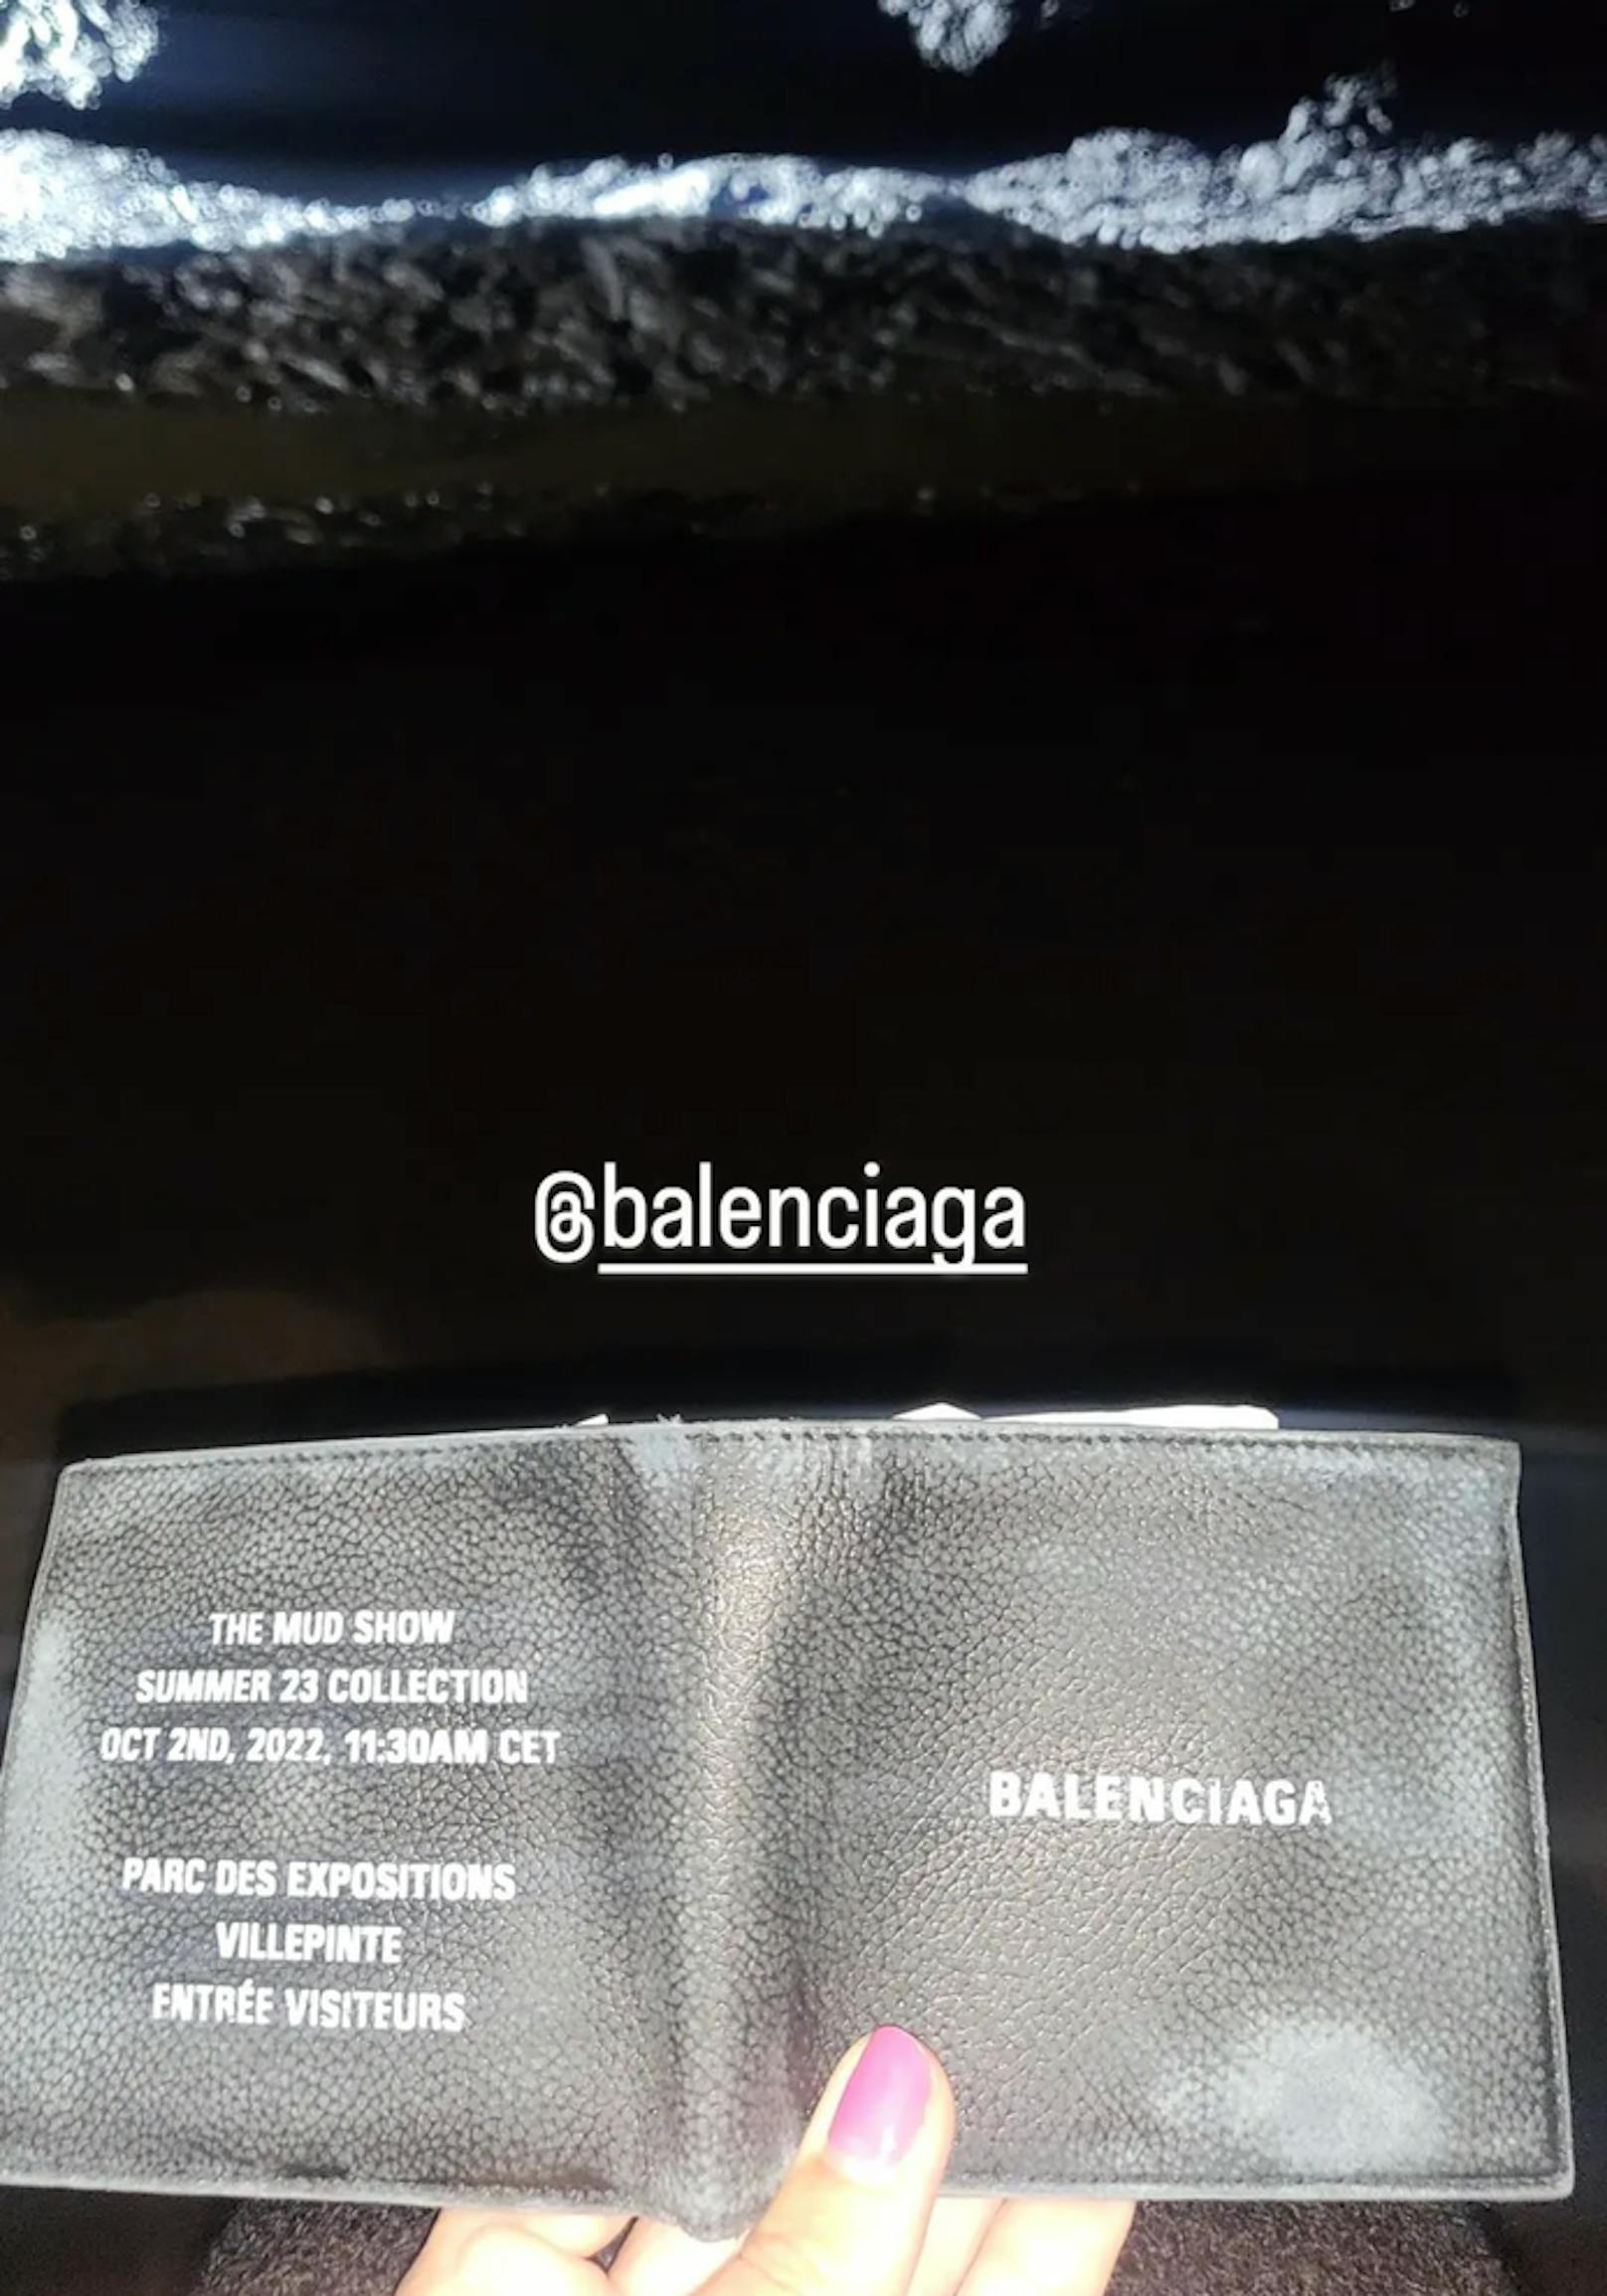 Balenciaga lud zur Schlamm-Show in Paris.